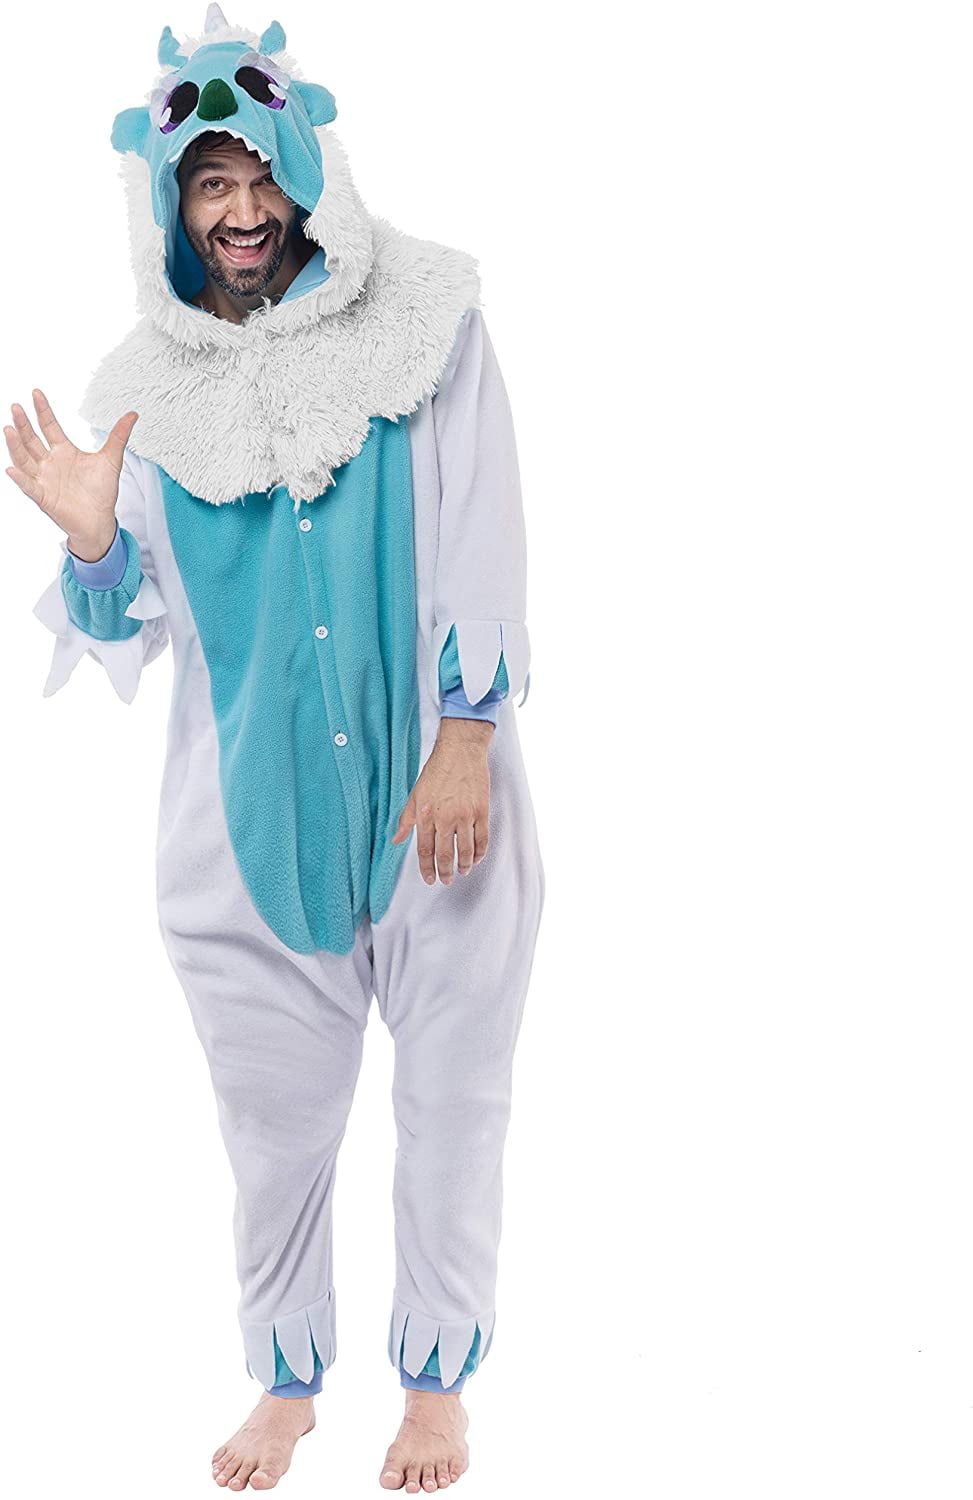 Adult Fleece Unisex  Kigurumi Animal Pajamas Cosplay Costume Sleepwear bodysuit 